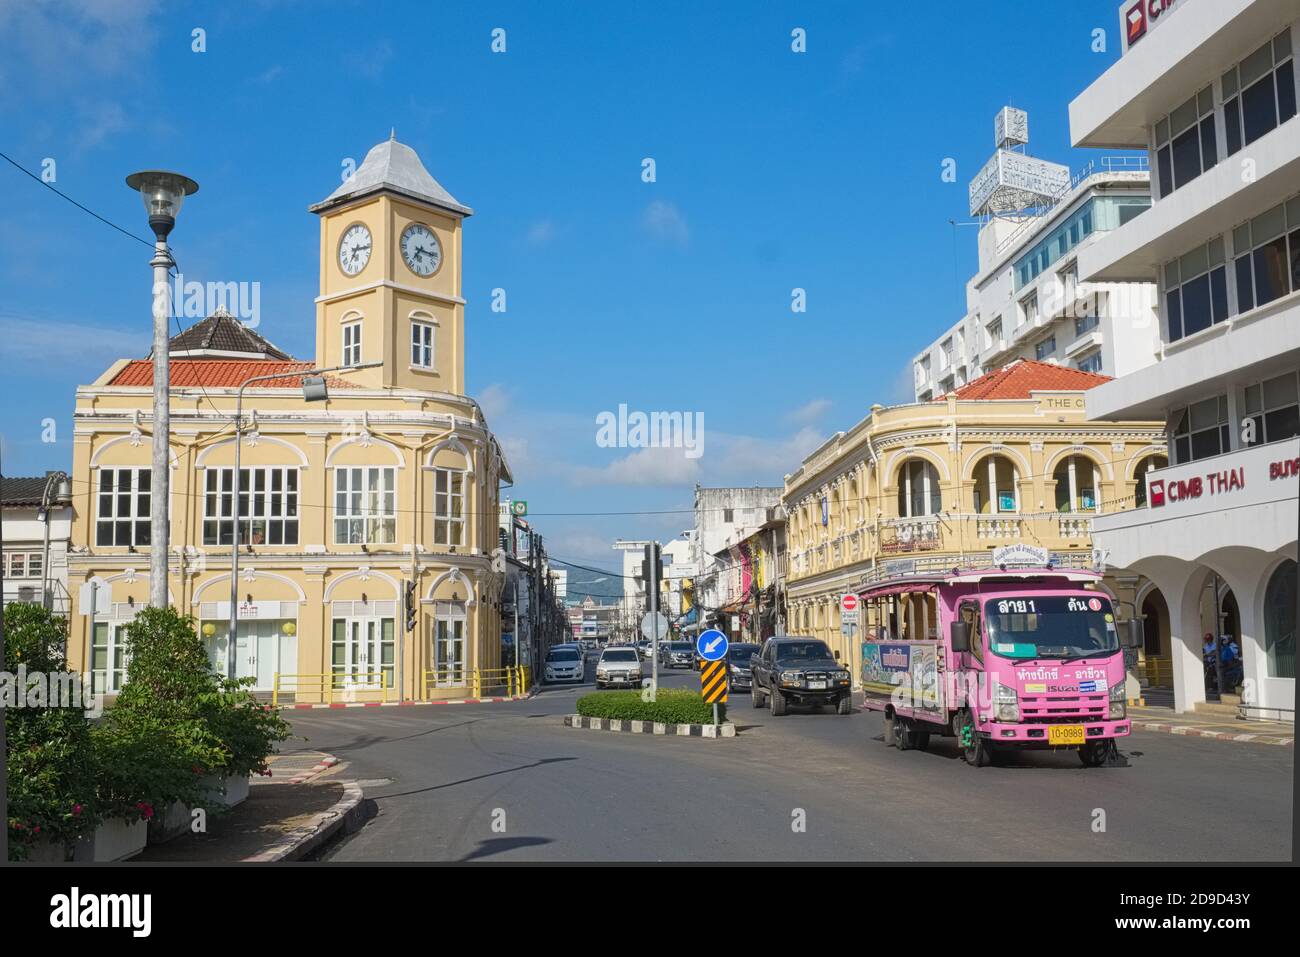 Vista de la zona de la Ciudad Vieja de la ciudad de Phuket en el sur de Tailandia, con la histórica torre de reloj icónica en el b/g y un Pink Bus local (Potong) a la derecha Foto de stock